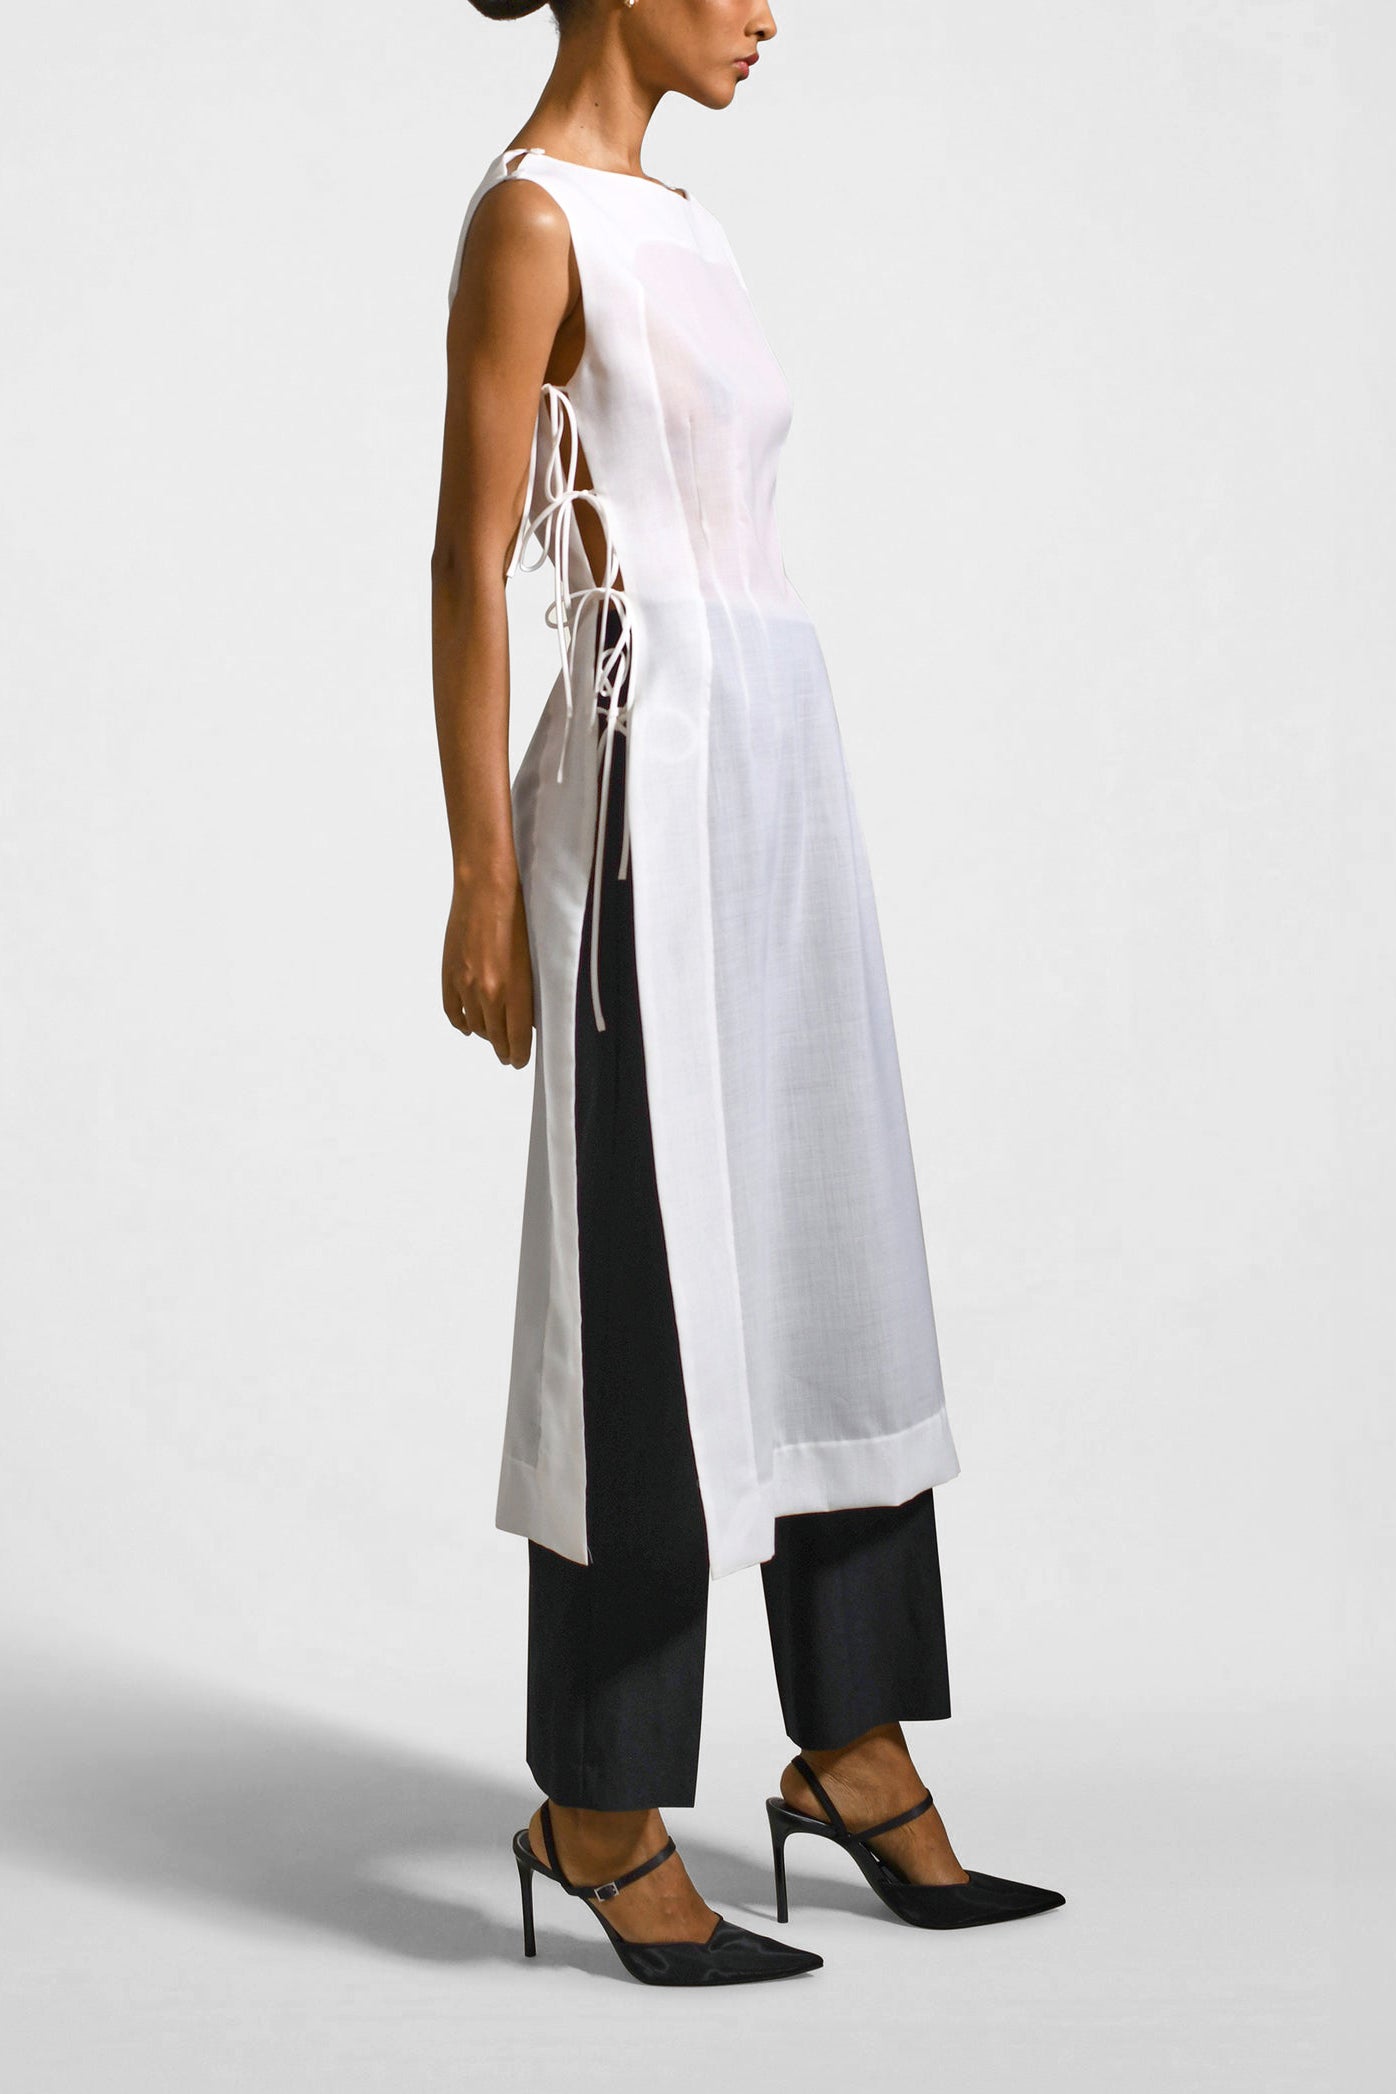 Elizabeth Vest Dress in Summer Wool Voile by Kallmeyer  http://www.shoprecital.com